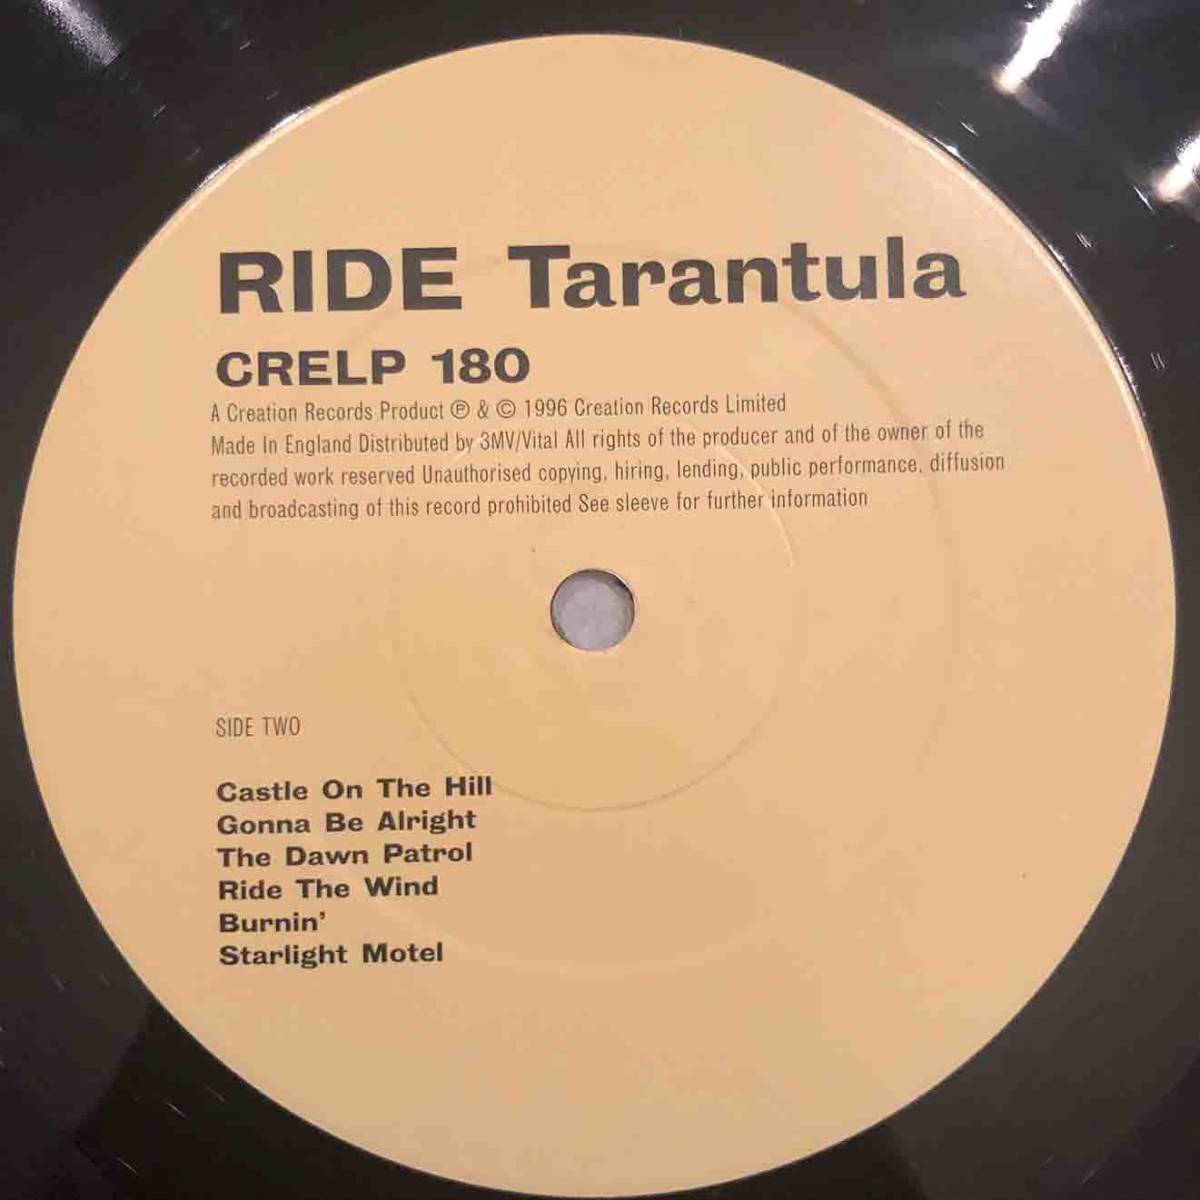 ■1996年 UK盤 オリジナル 新品 RIDE - Tarantula 12’LP Limited Edition CRElLP 180 Creation Records_画像5